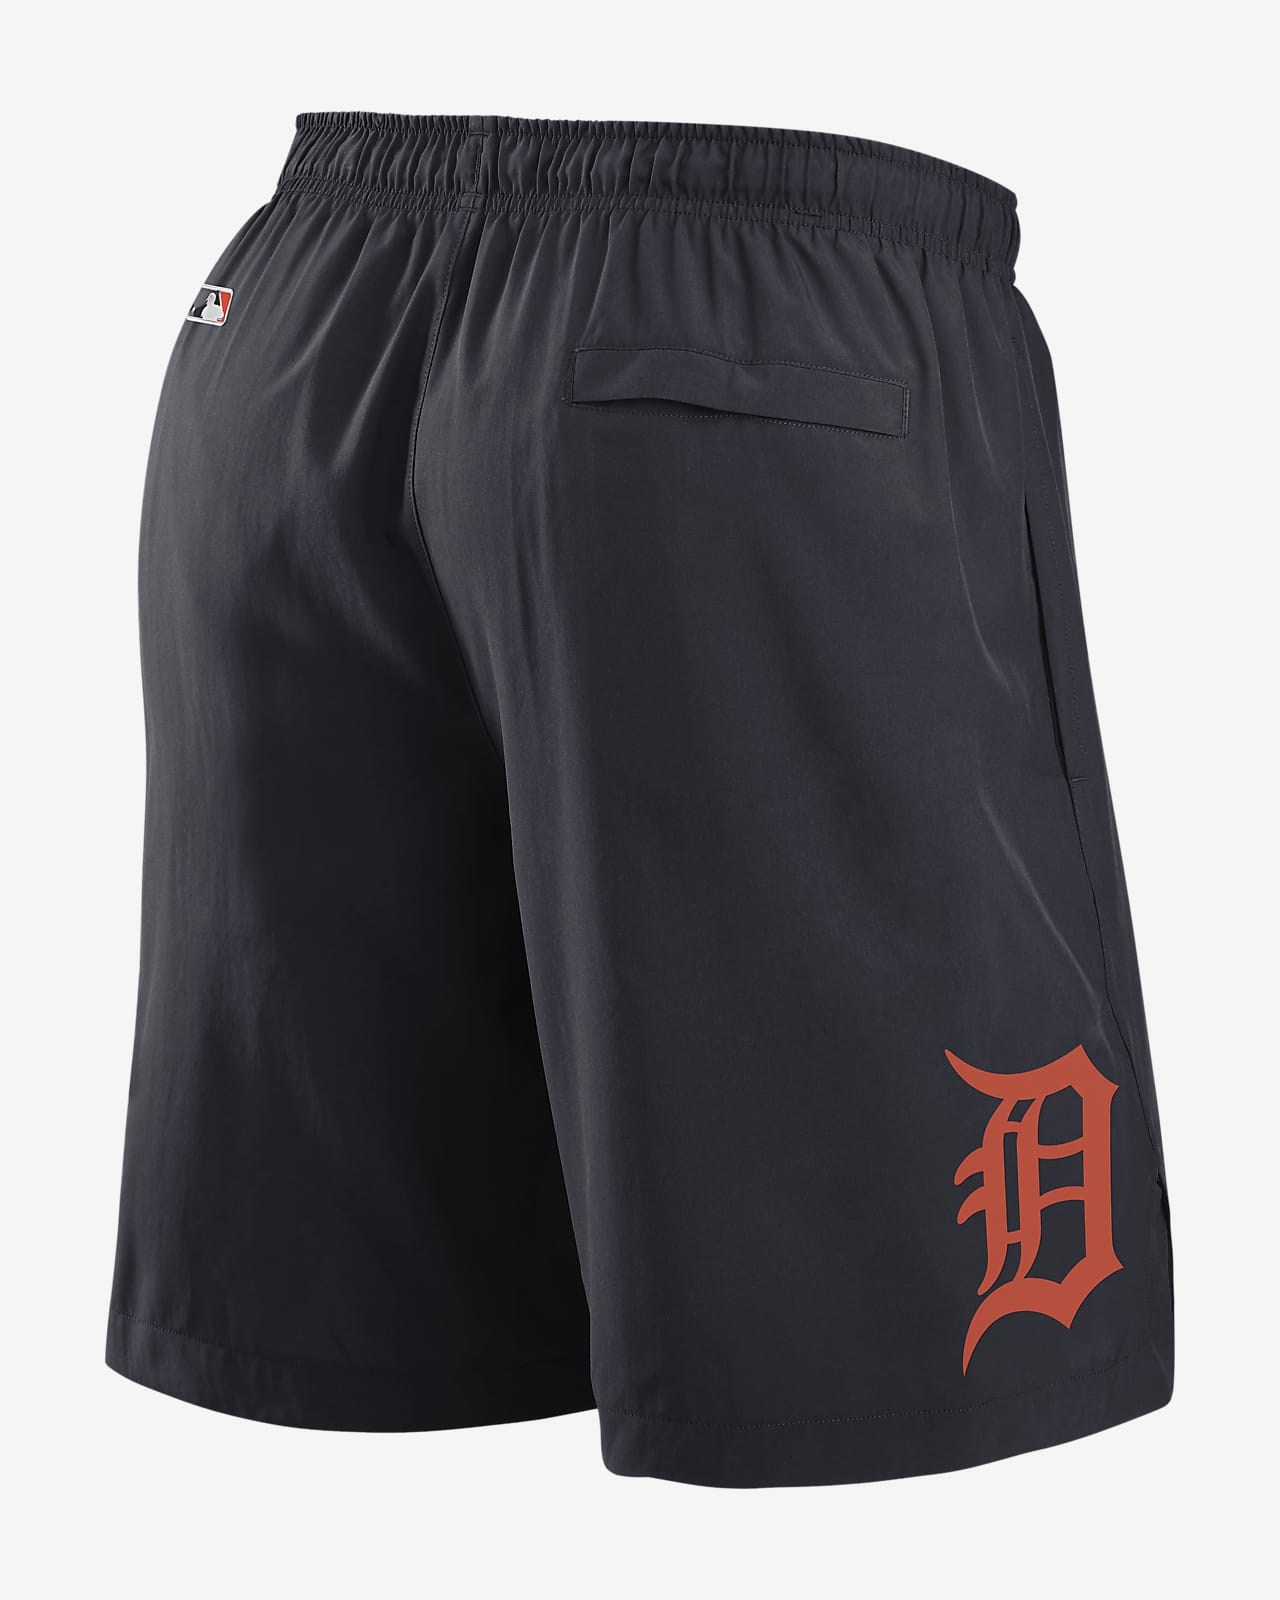 Nike Dri-FIT (MLB Detroit Tigers) Men's Shorts.